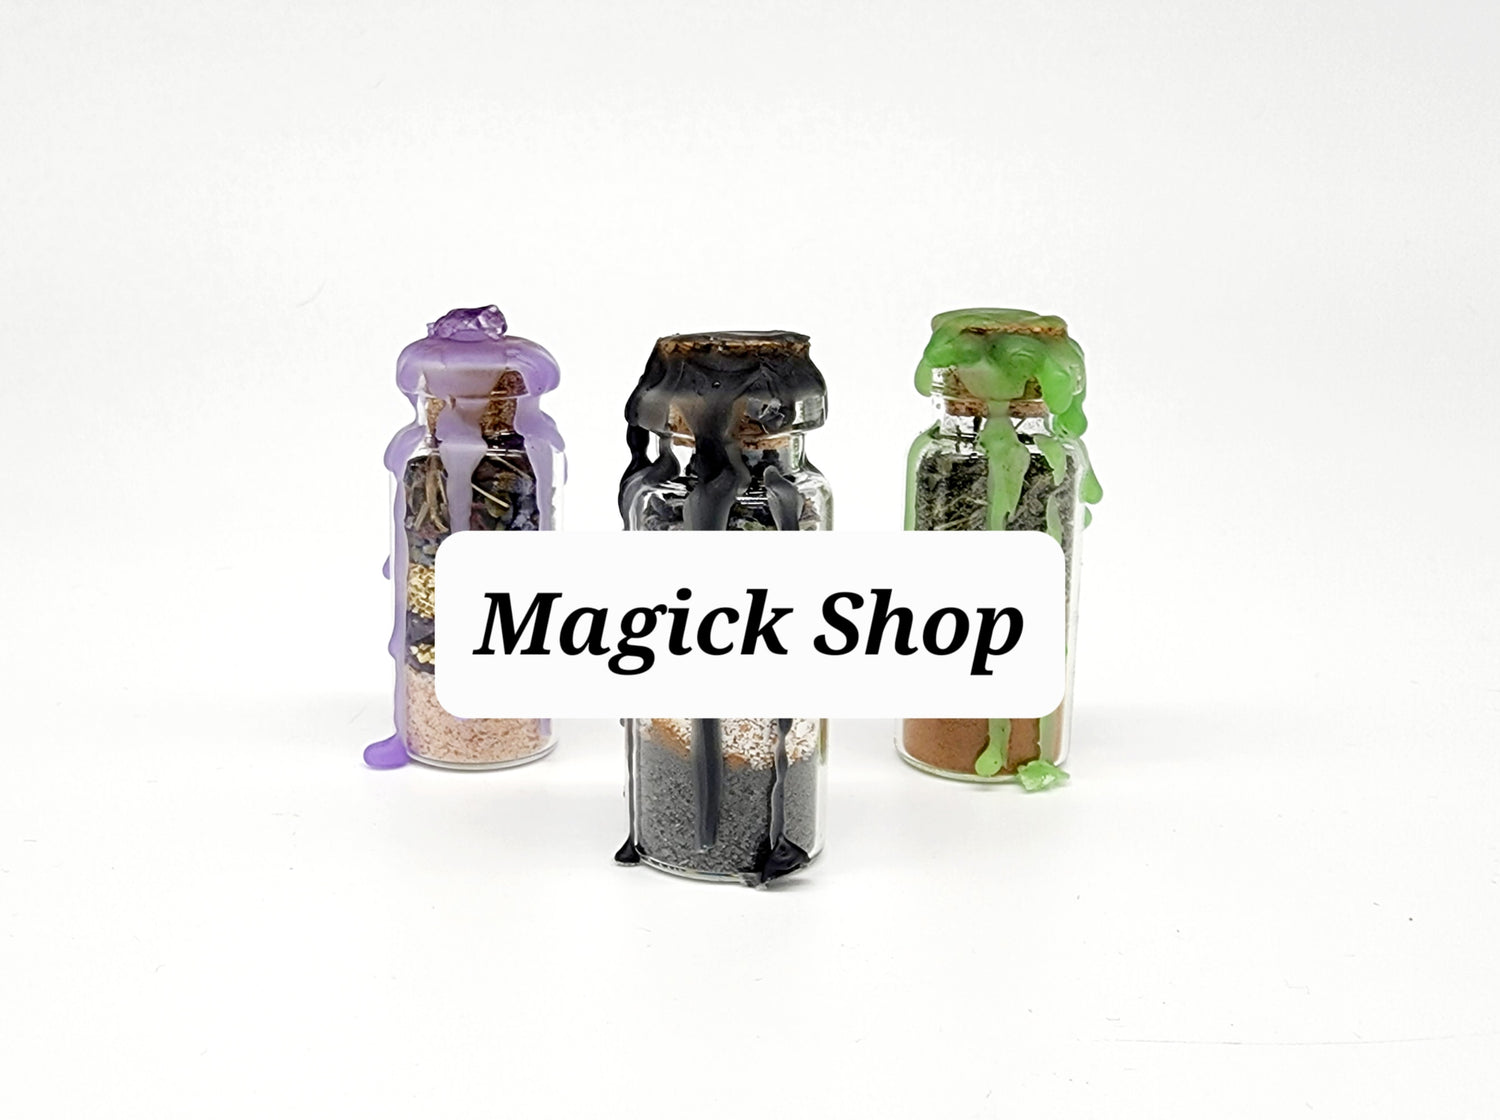 Magick Shop